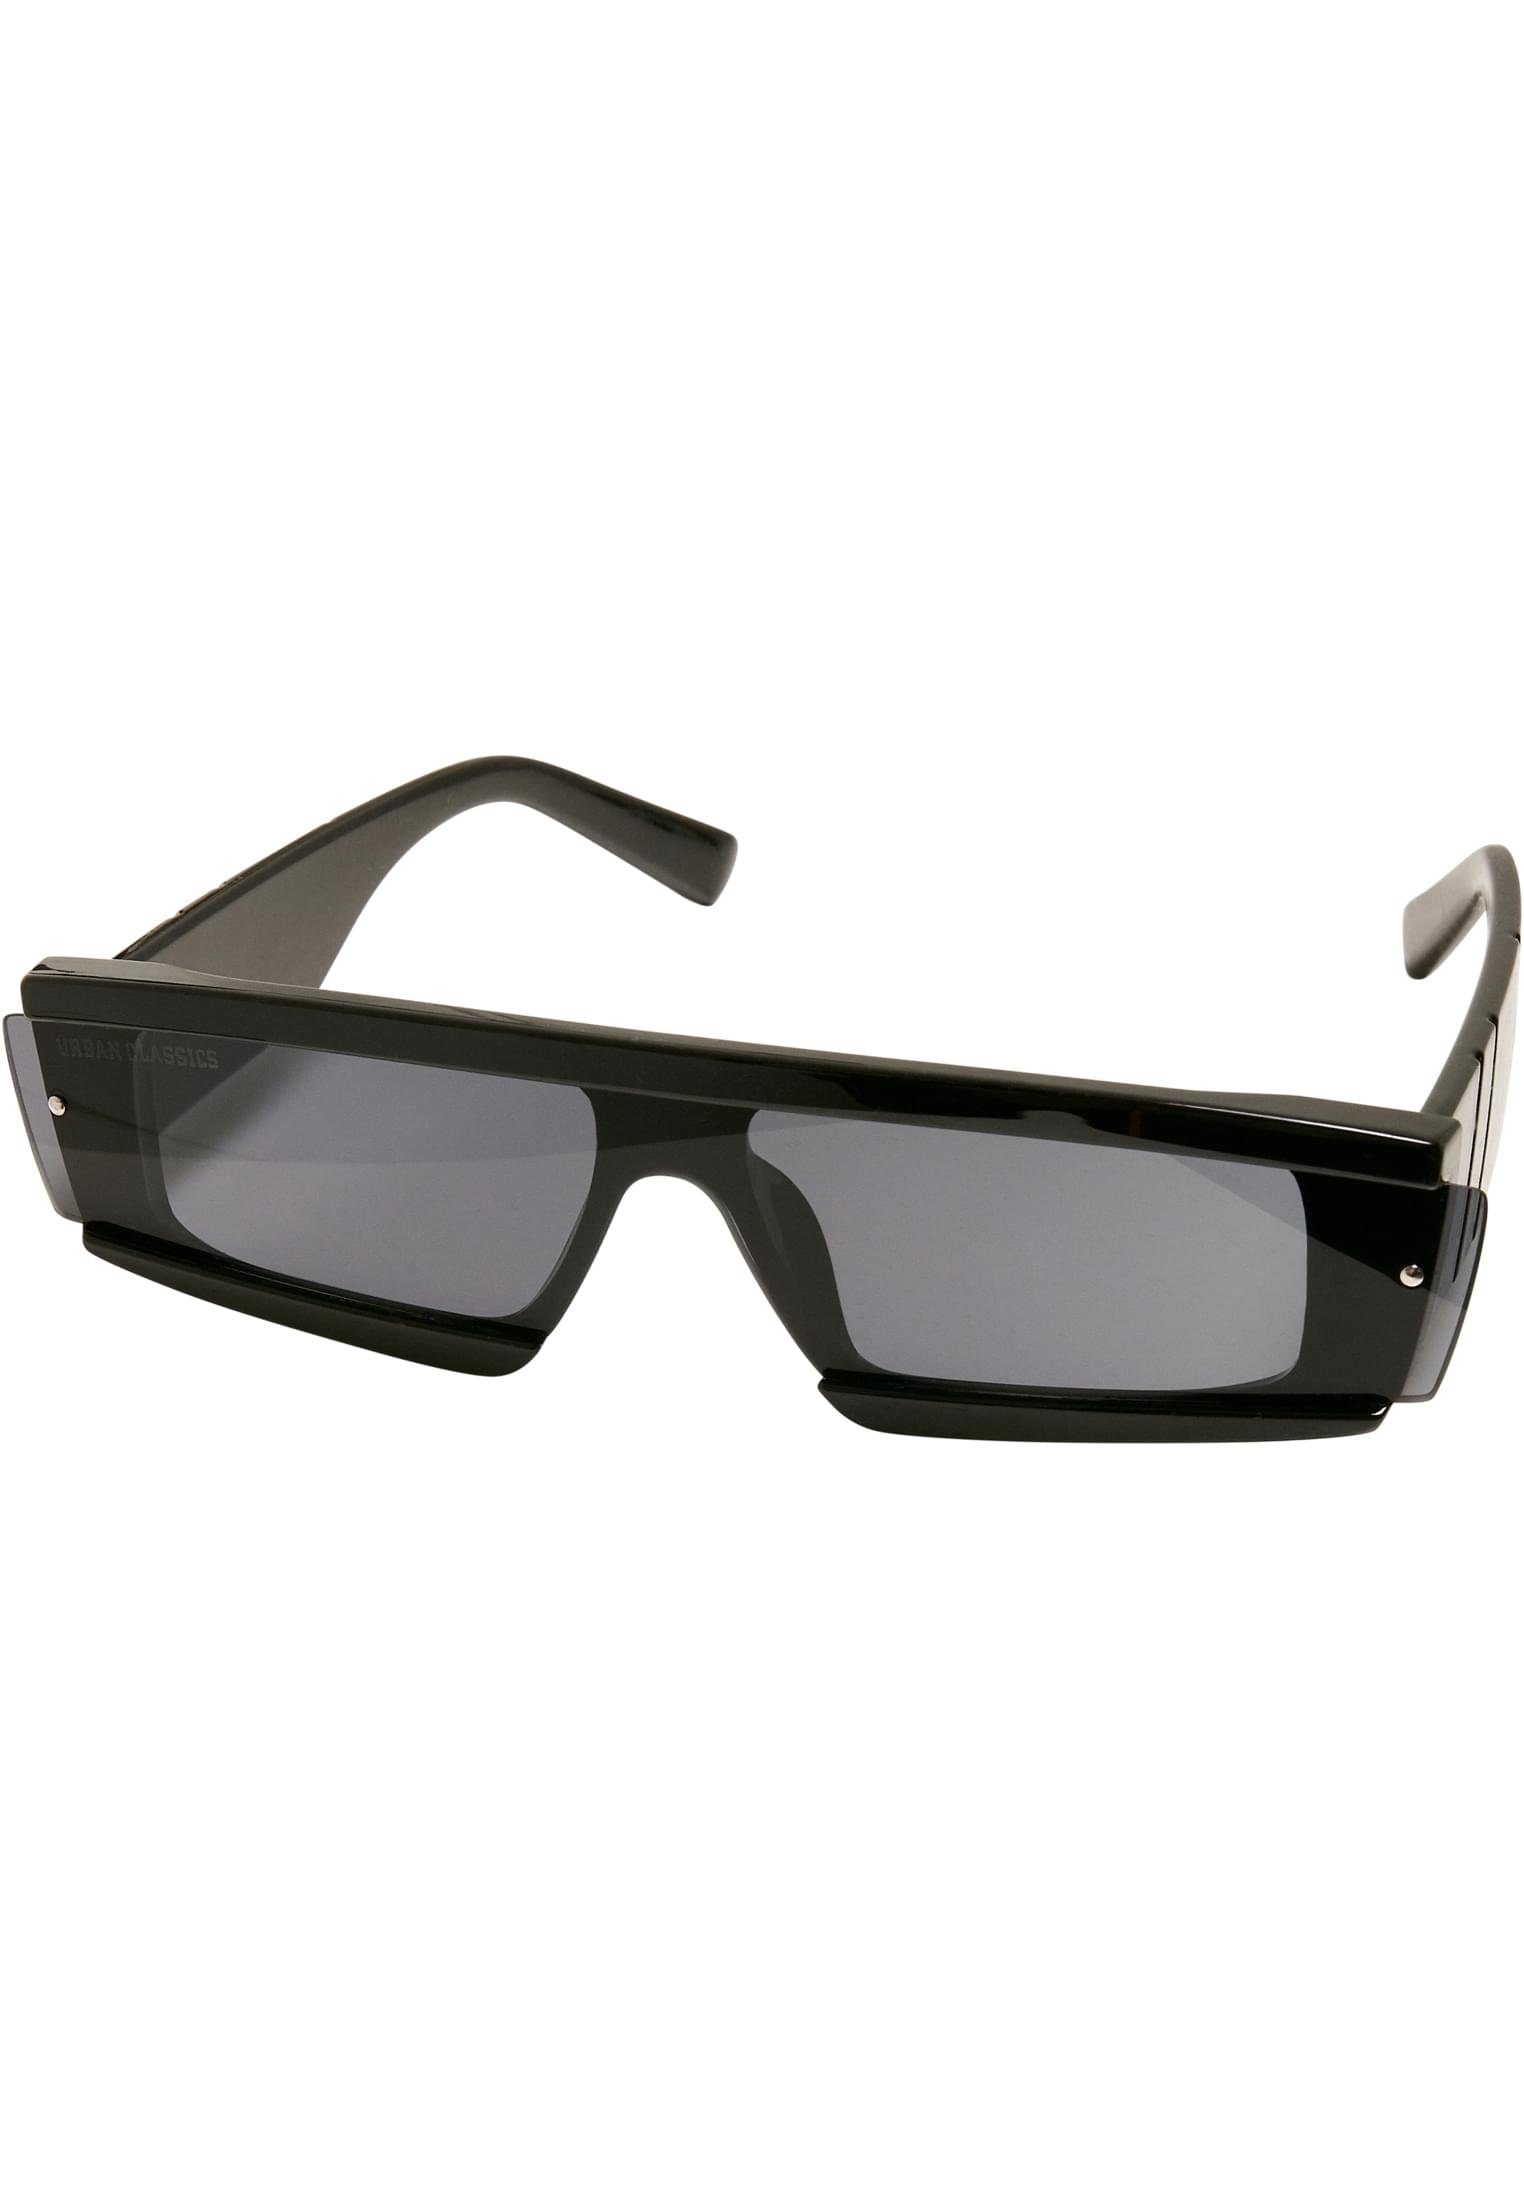 URBAN CLASSICS Sonnenbrille Unisex Sunglasses Alabama 2-Pack, Ideal auch  für Sport im Freien geeignet | Sonnenbrillen